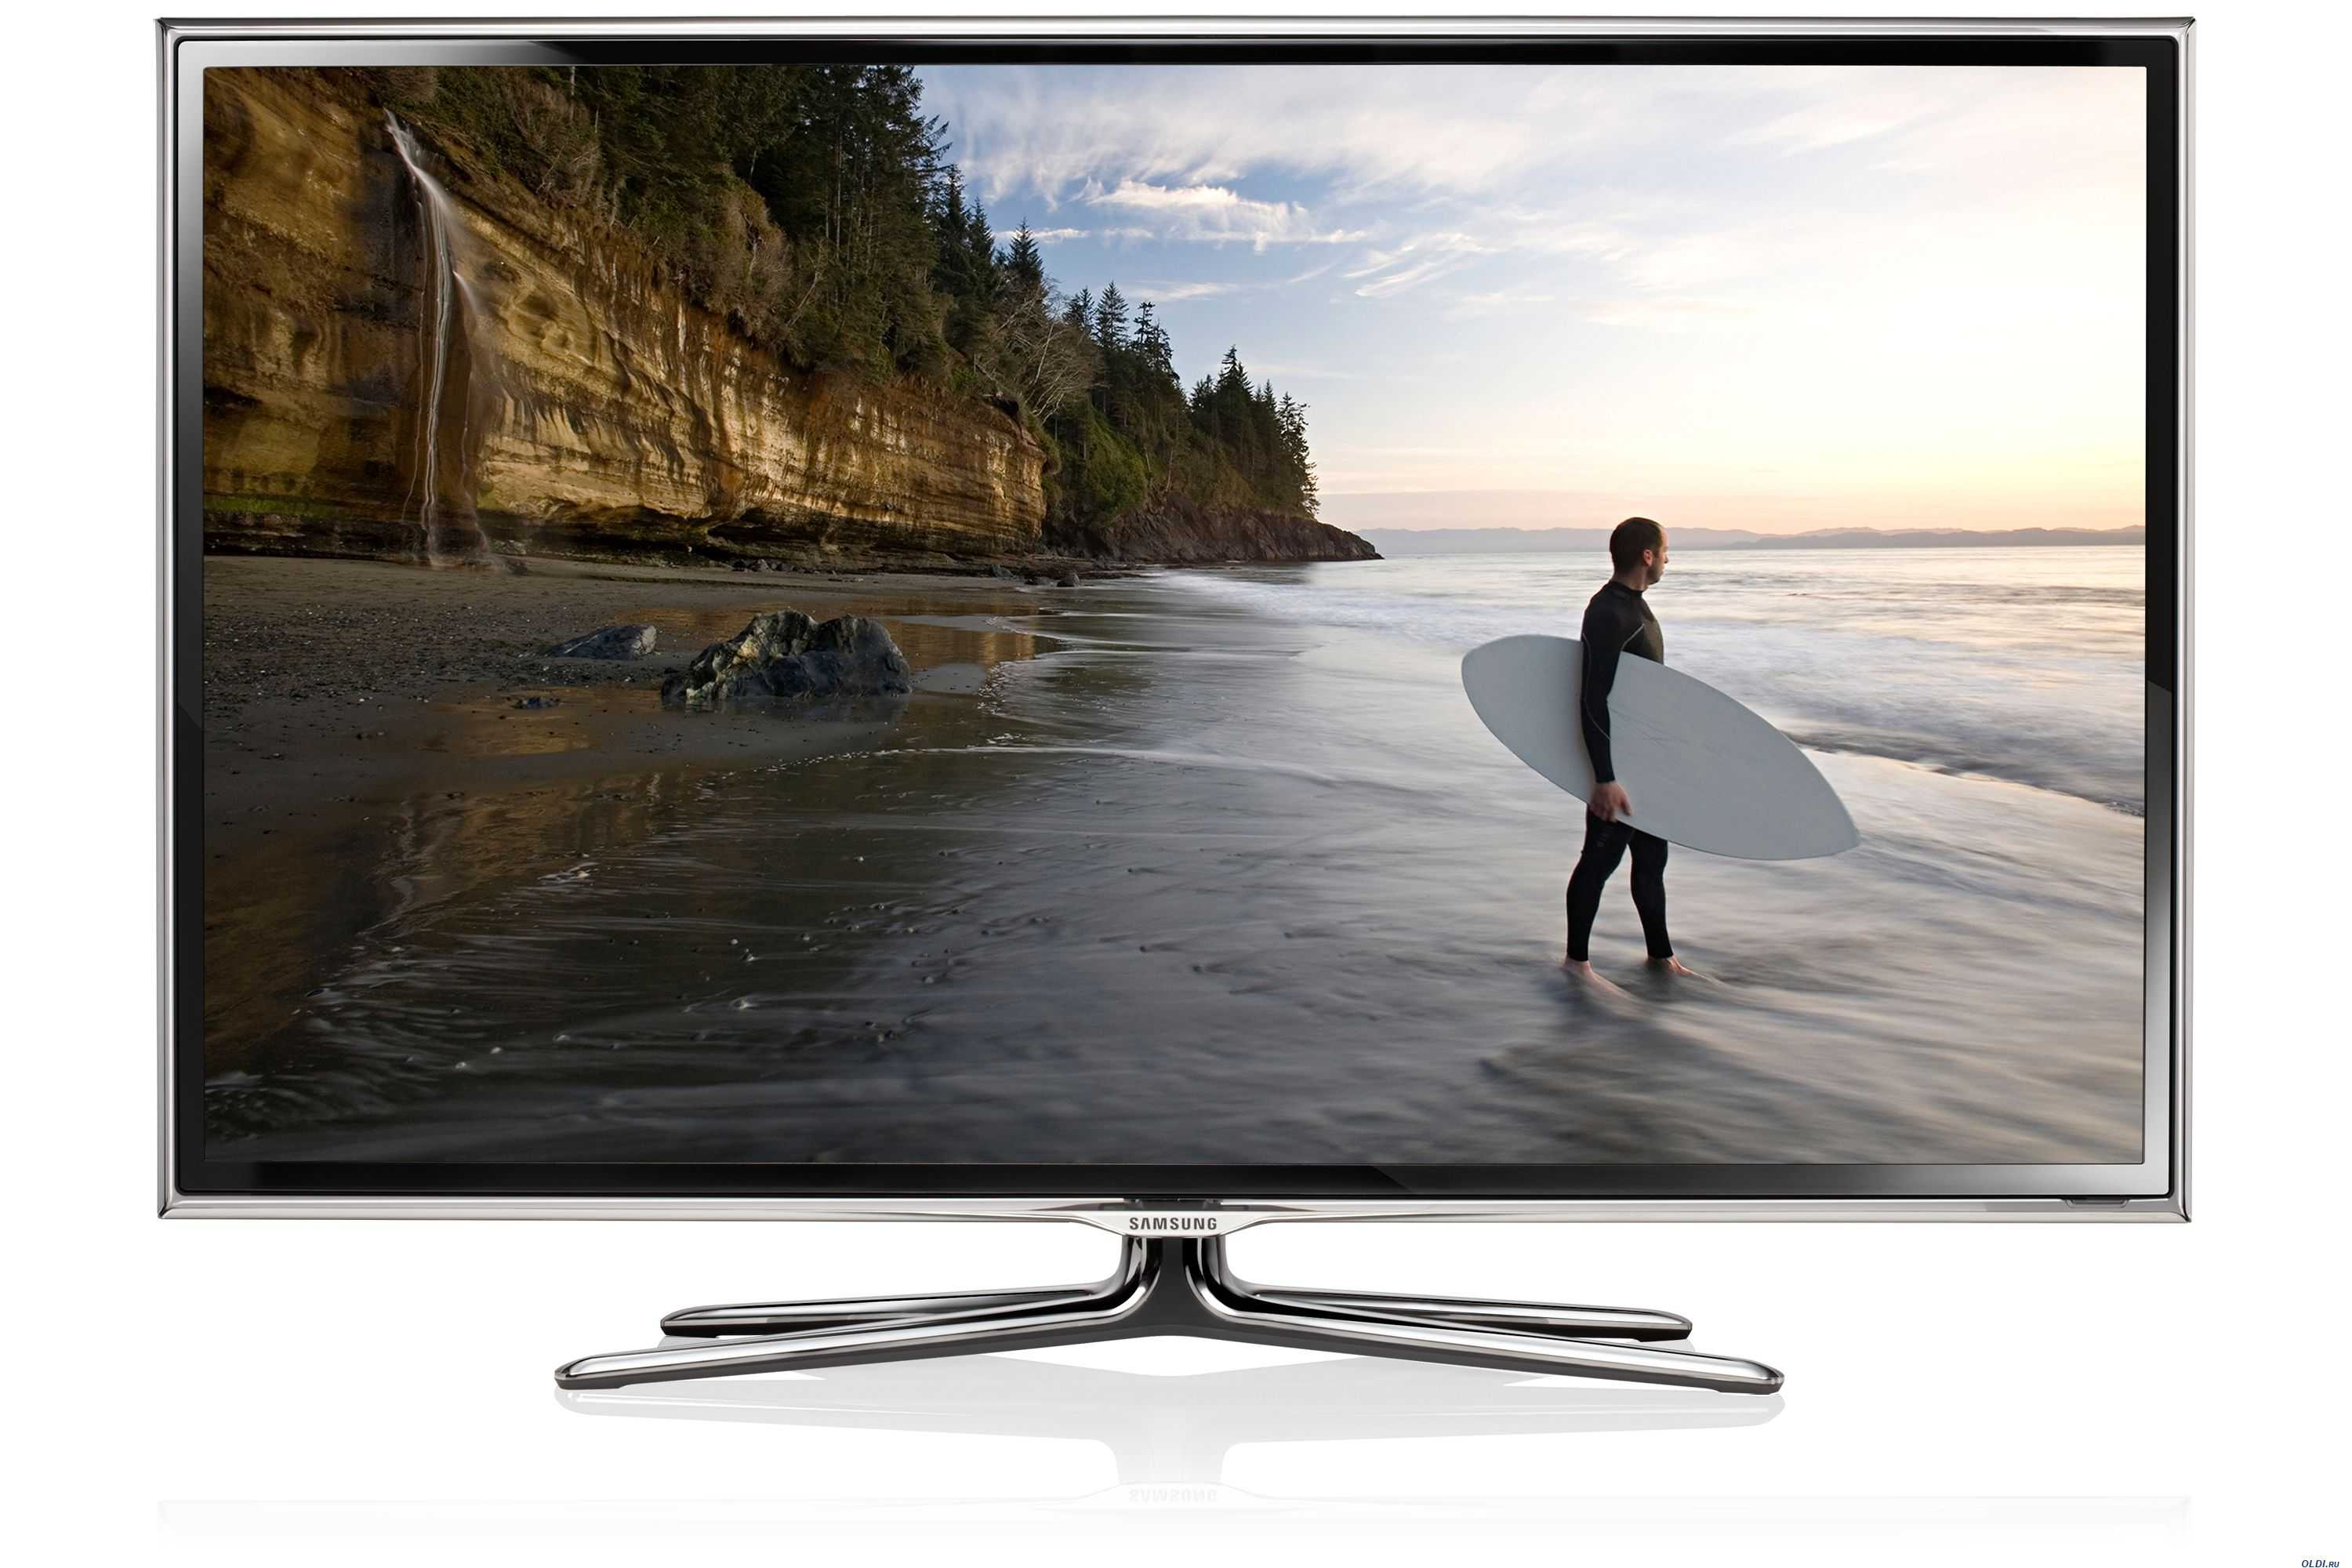 Samsung ue40es6307 (черный) - купить , скидки, цена, отзывы, обзор, характеристики - телевизоры